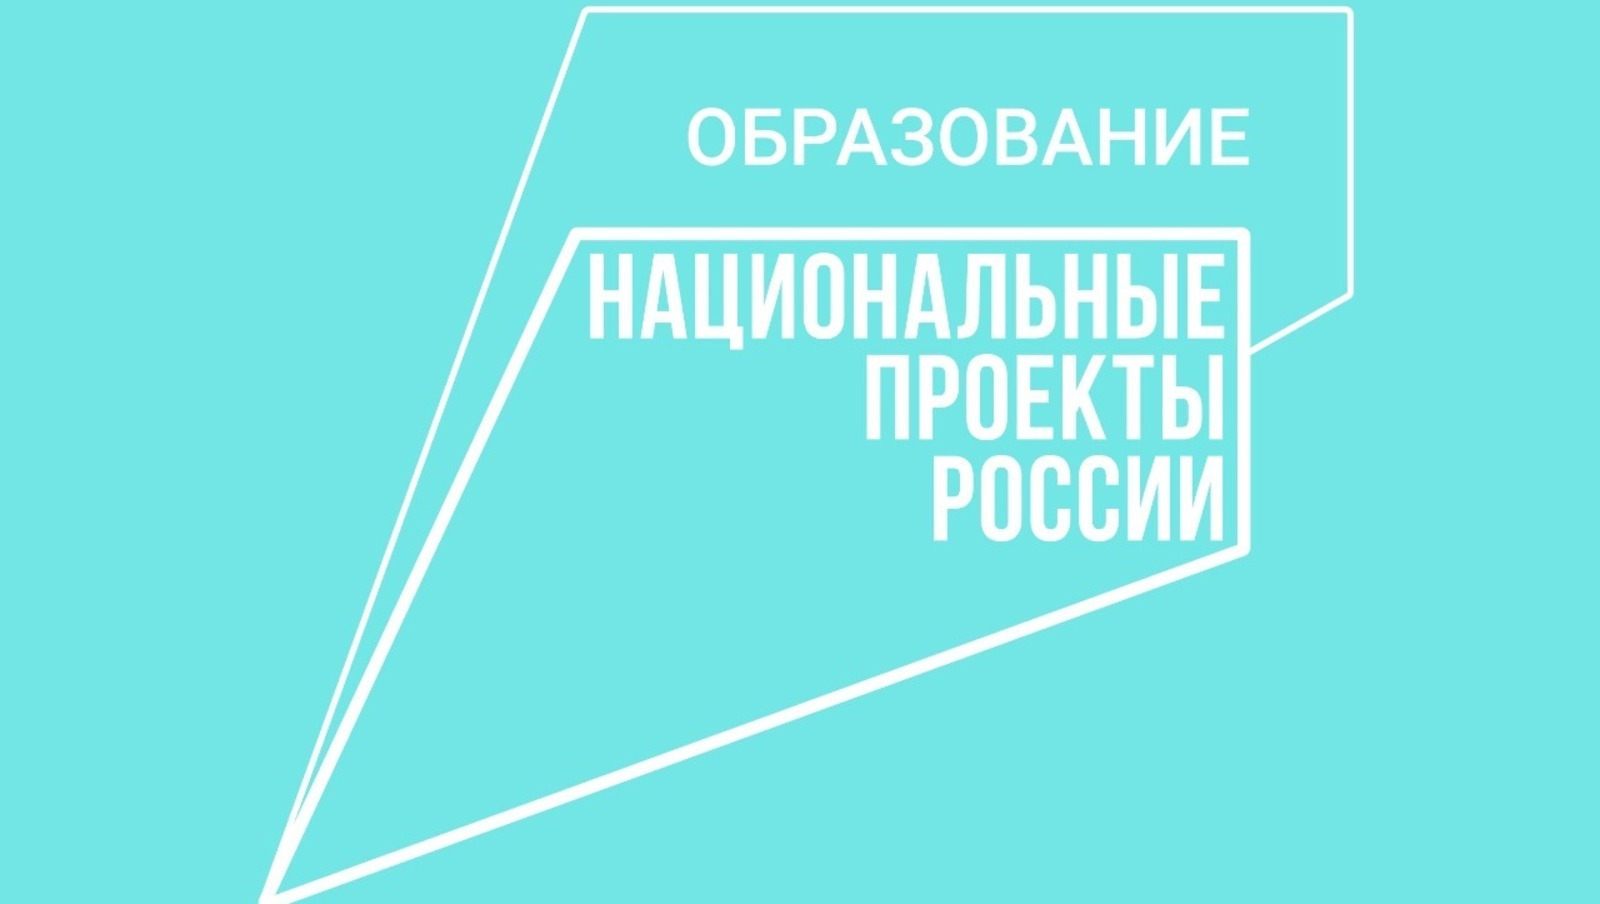 Башкортостан привлек более 90 млн рублей из федерального бюджета в рамках нацпроекта «Образование»